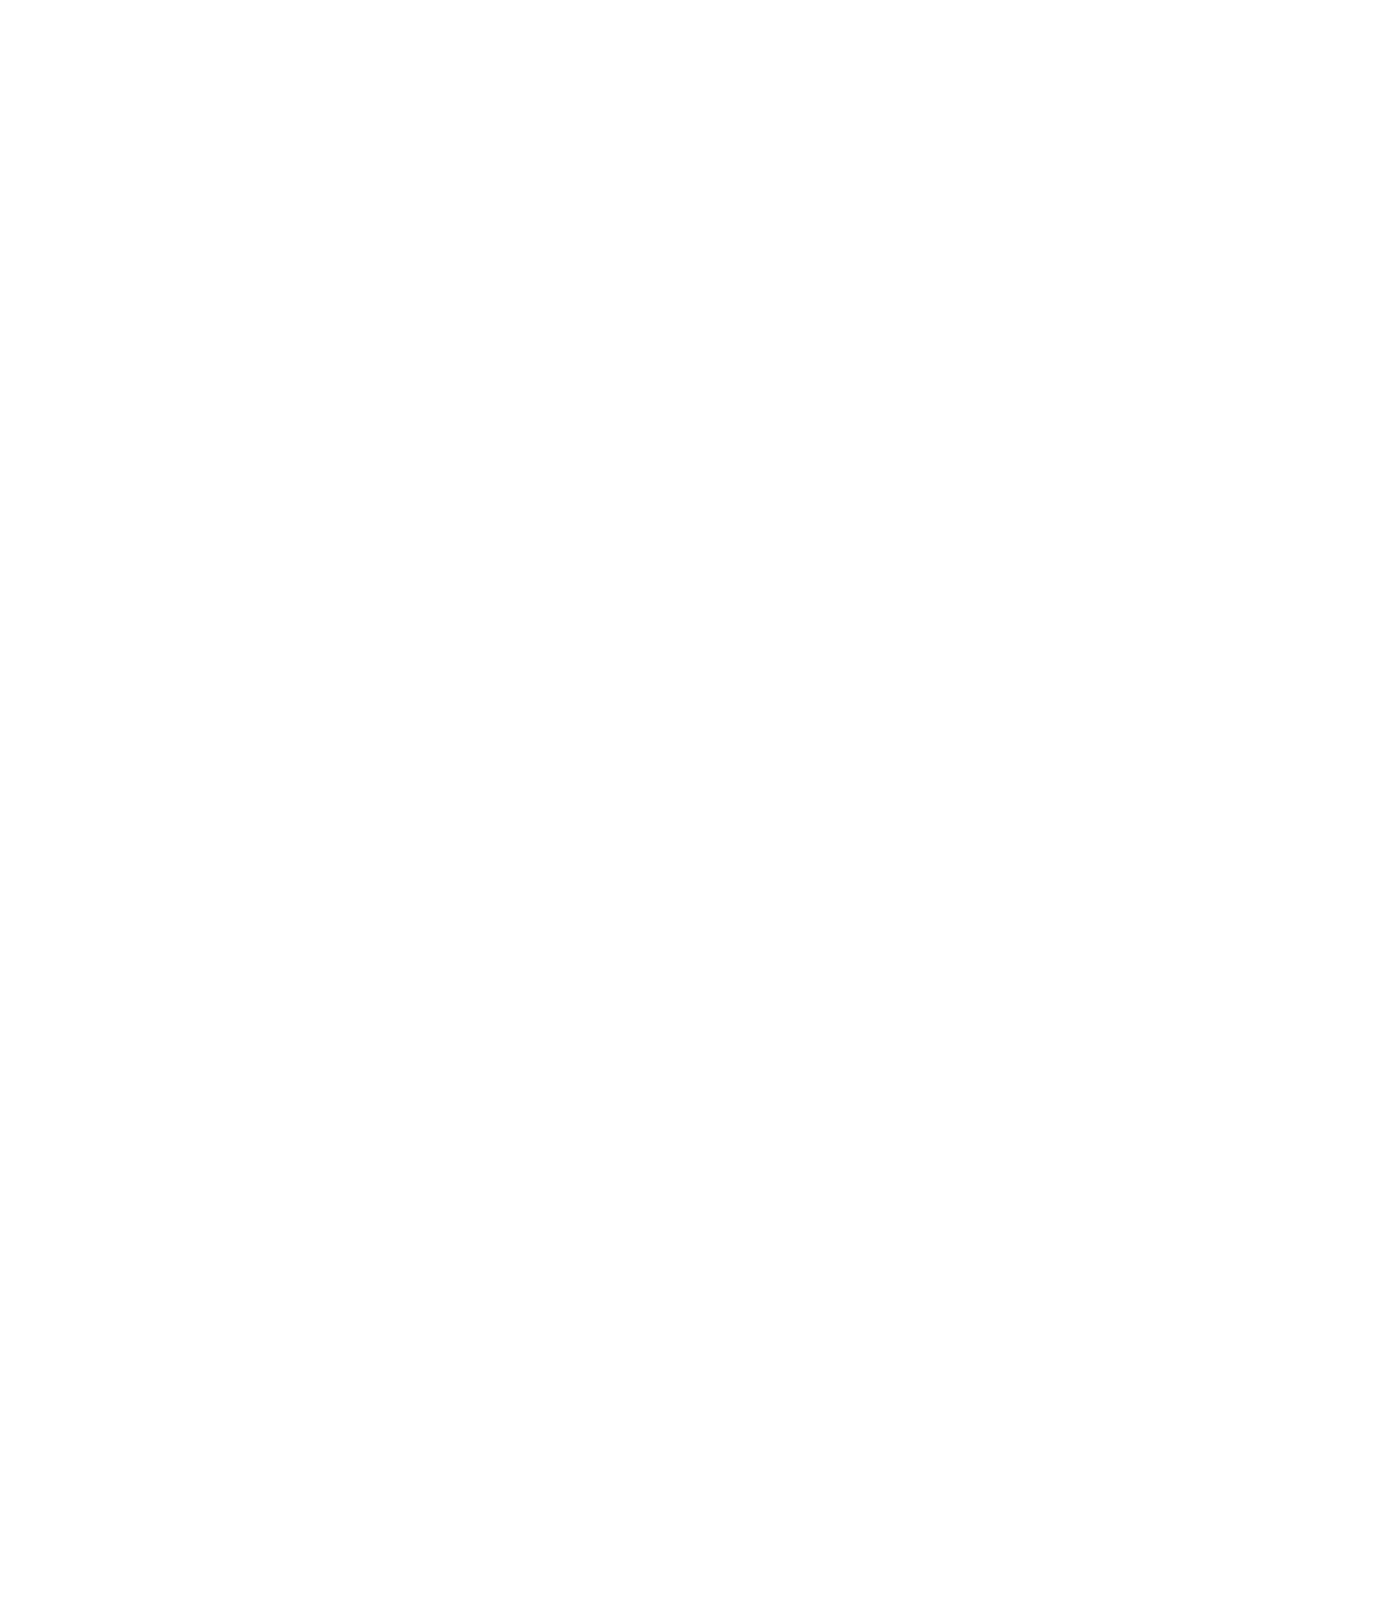 椎名林檎、テレ朝金曜ナイトドラマ『時効警察はじめました』に主題歌を提供サムネイル画像!